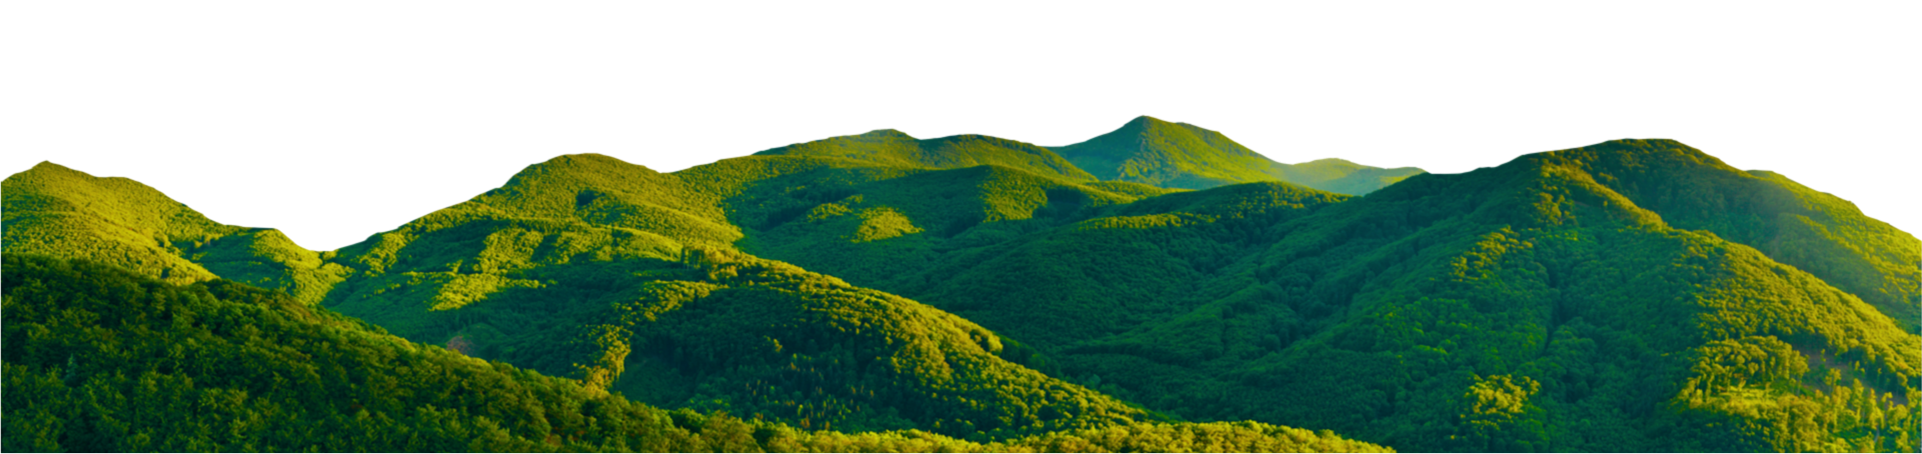 DIB Green Mountain